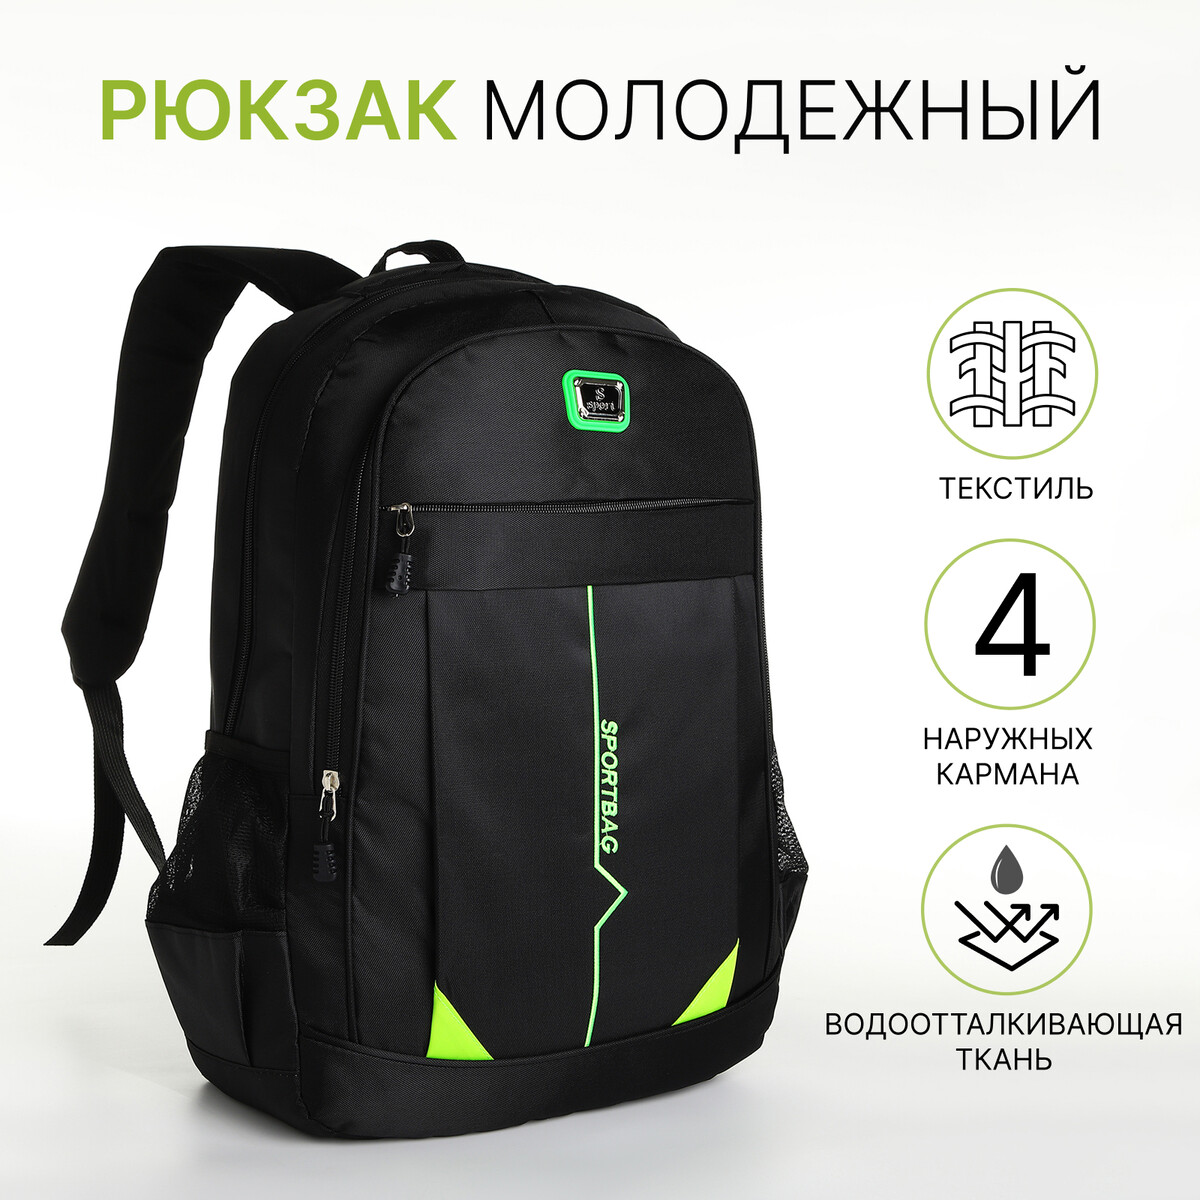 Рюкзак молодежный на молнии, 4 кармана, цвет черный/зеленый